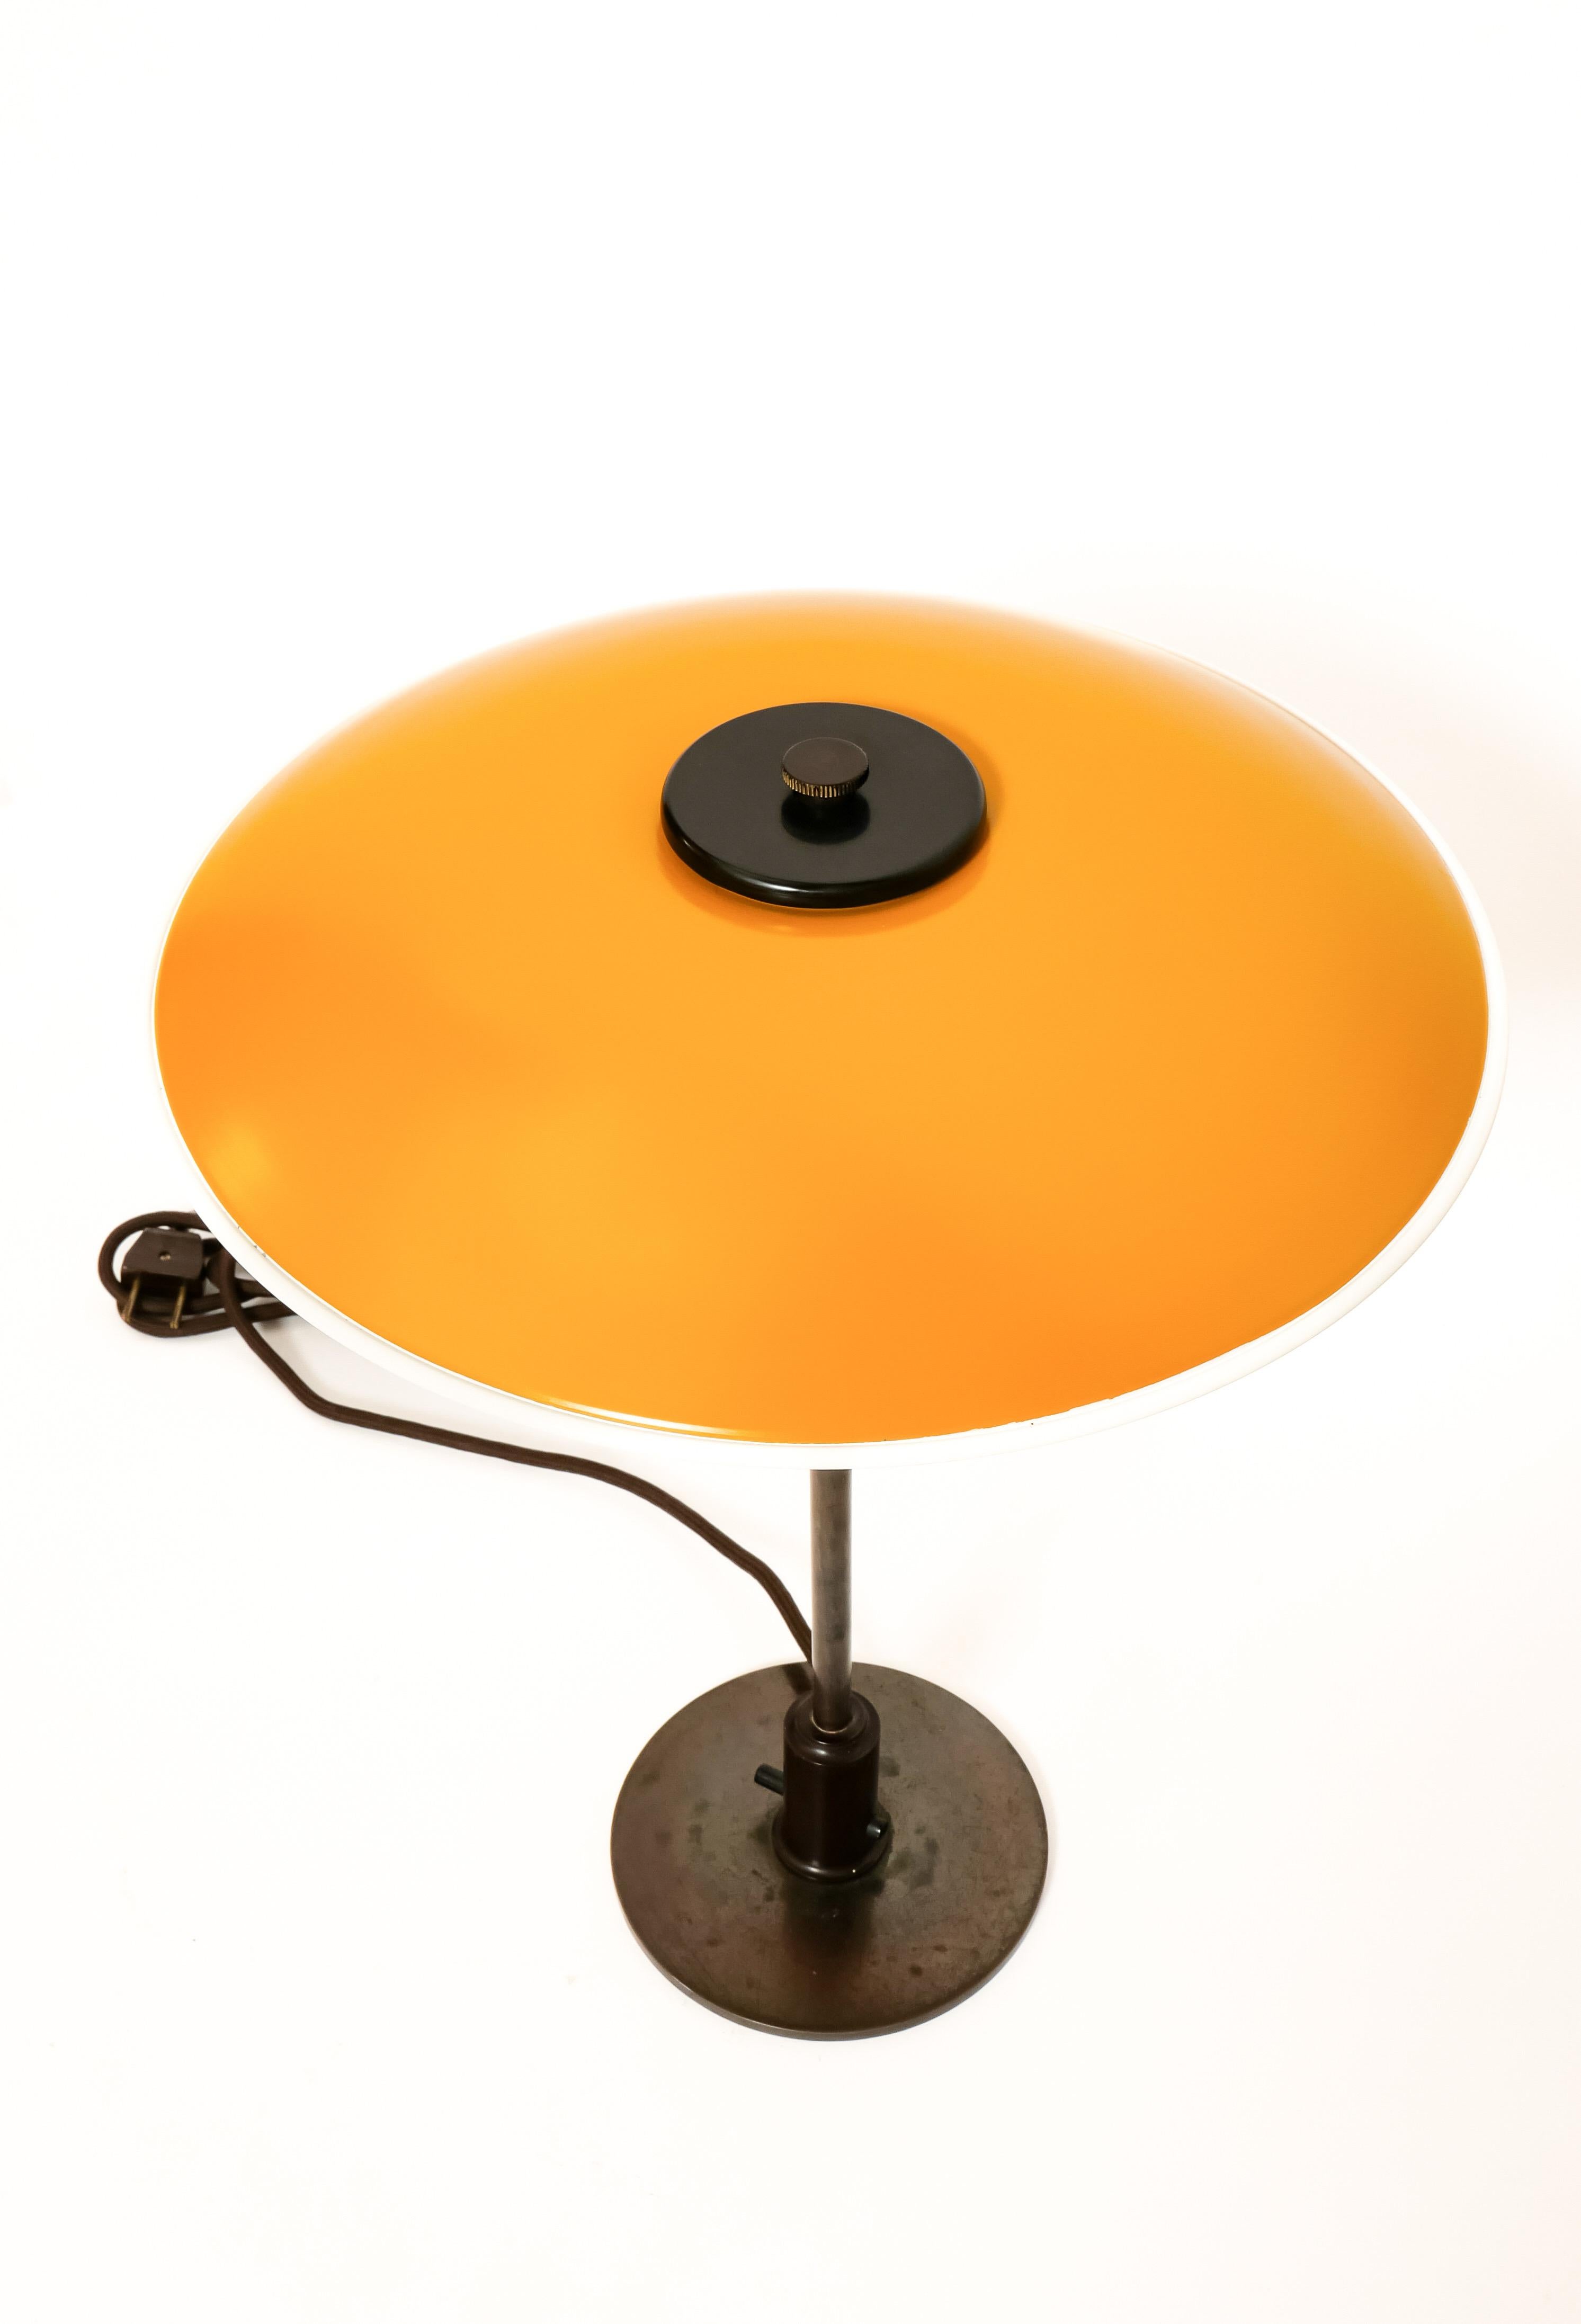 Scandinavian Modern Poul Henningsen 4/3 Table Lamp 1940s For Sale